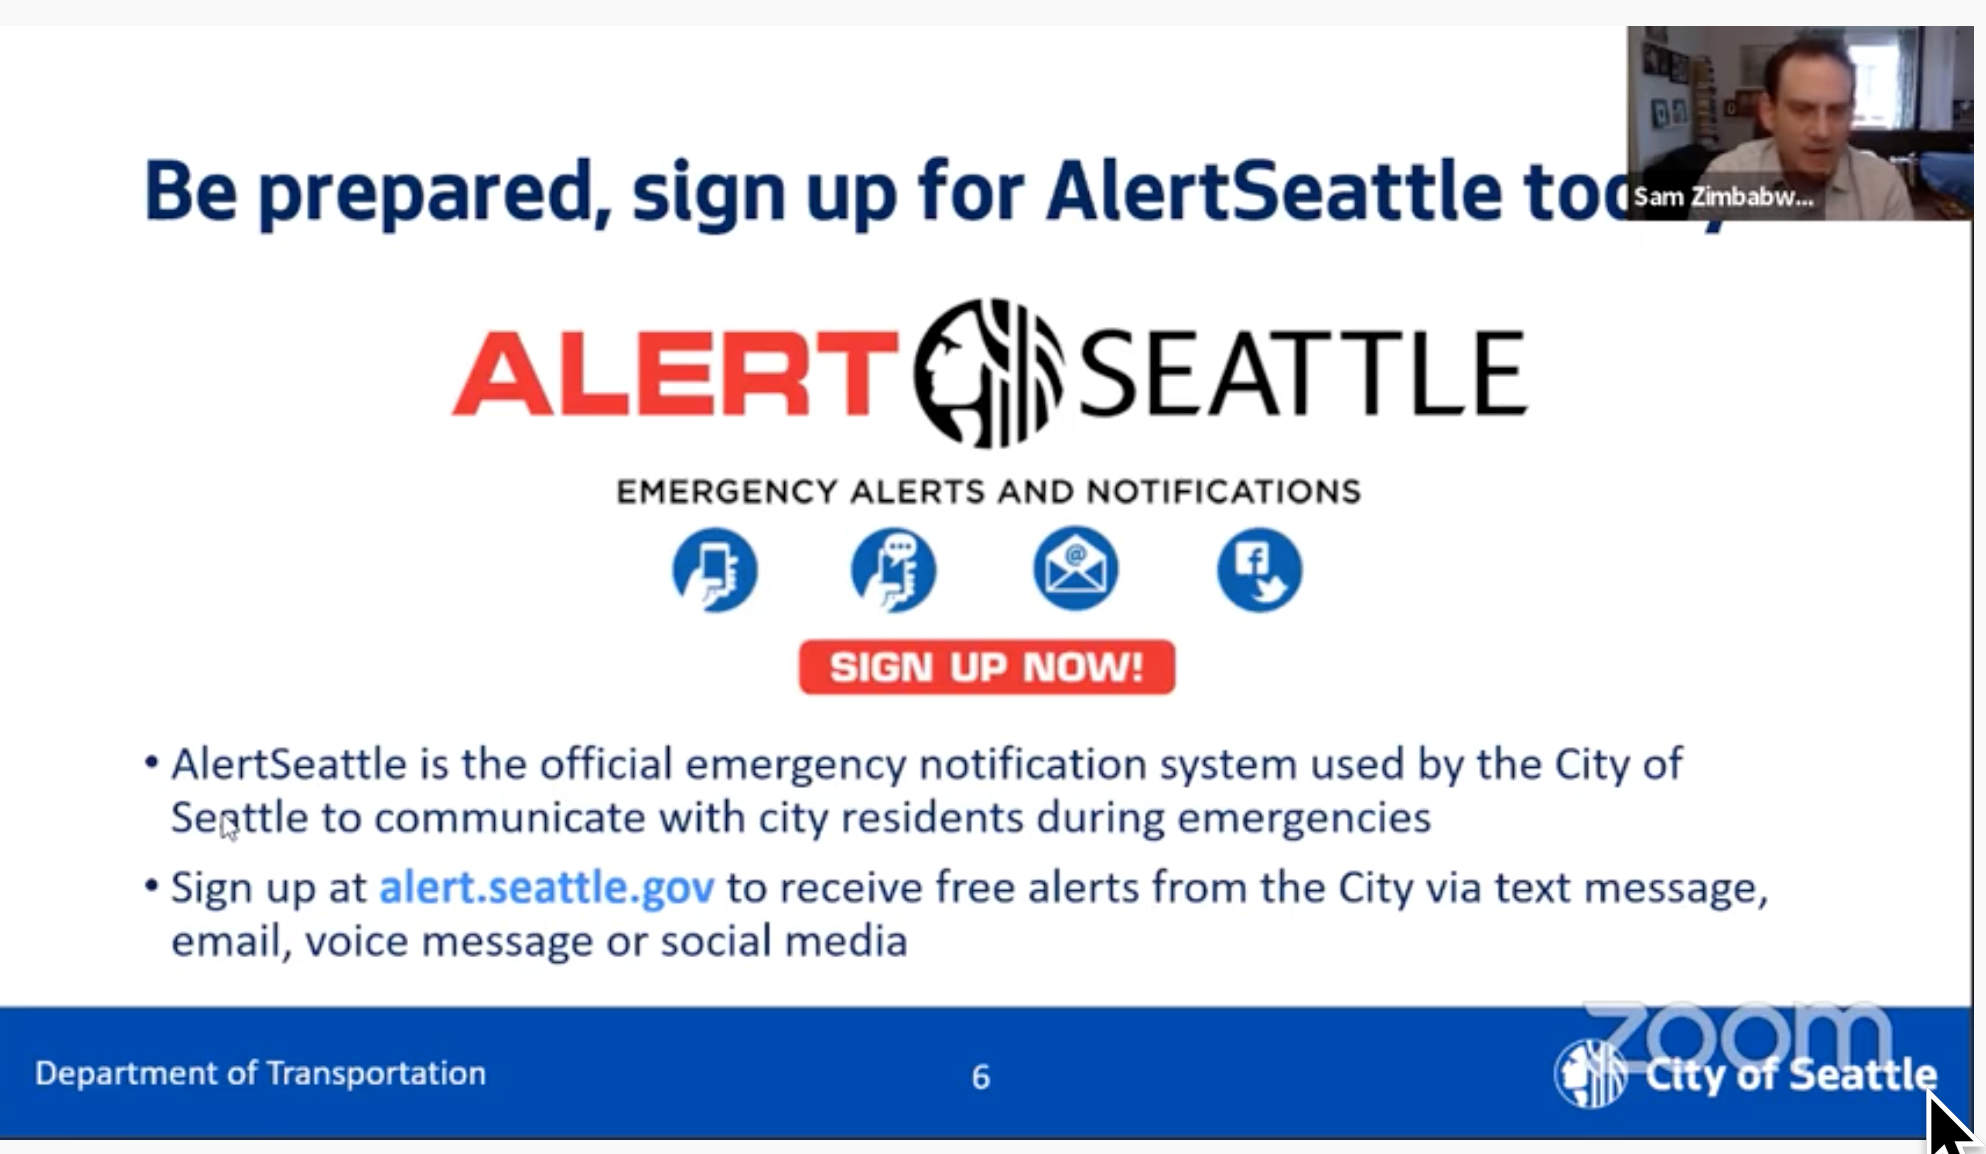 Alert Seattle